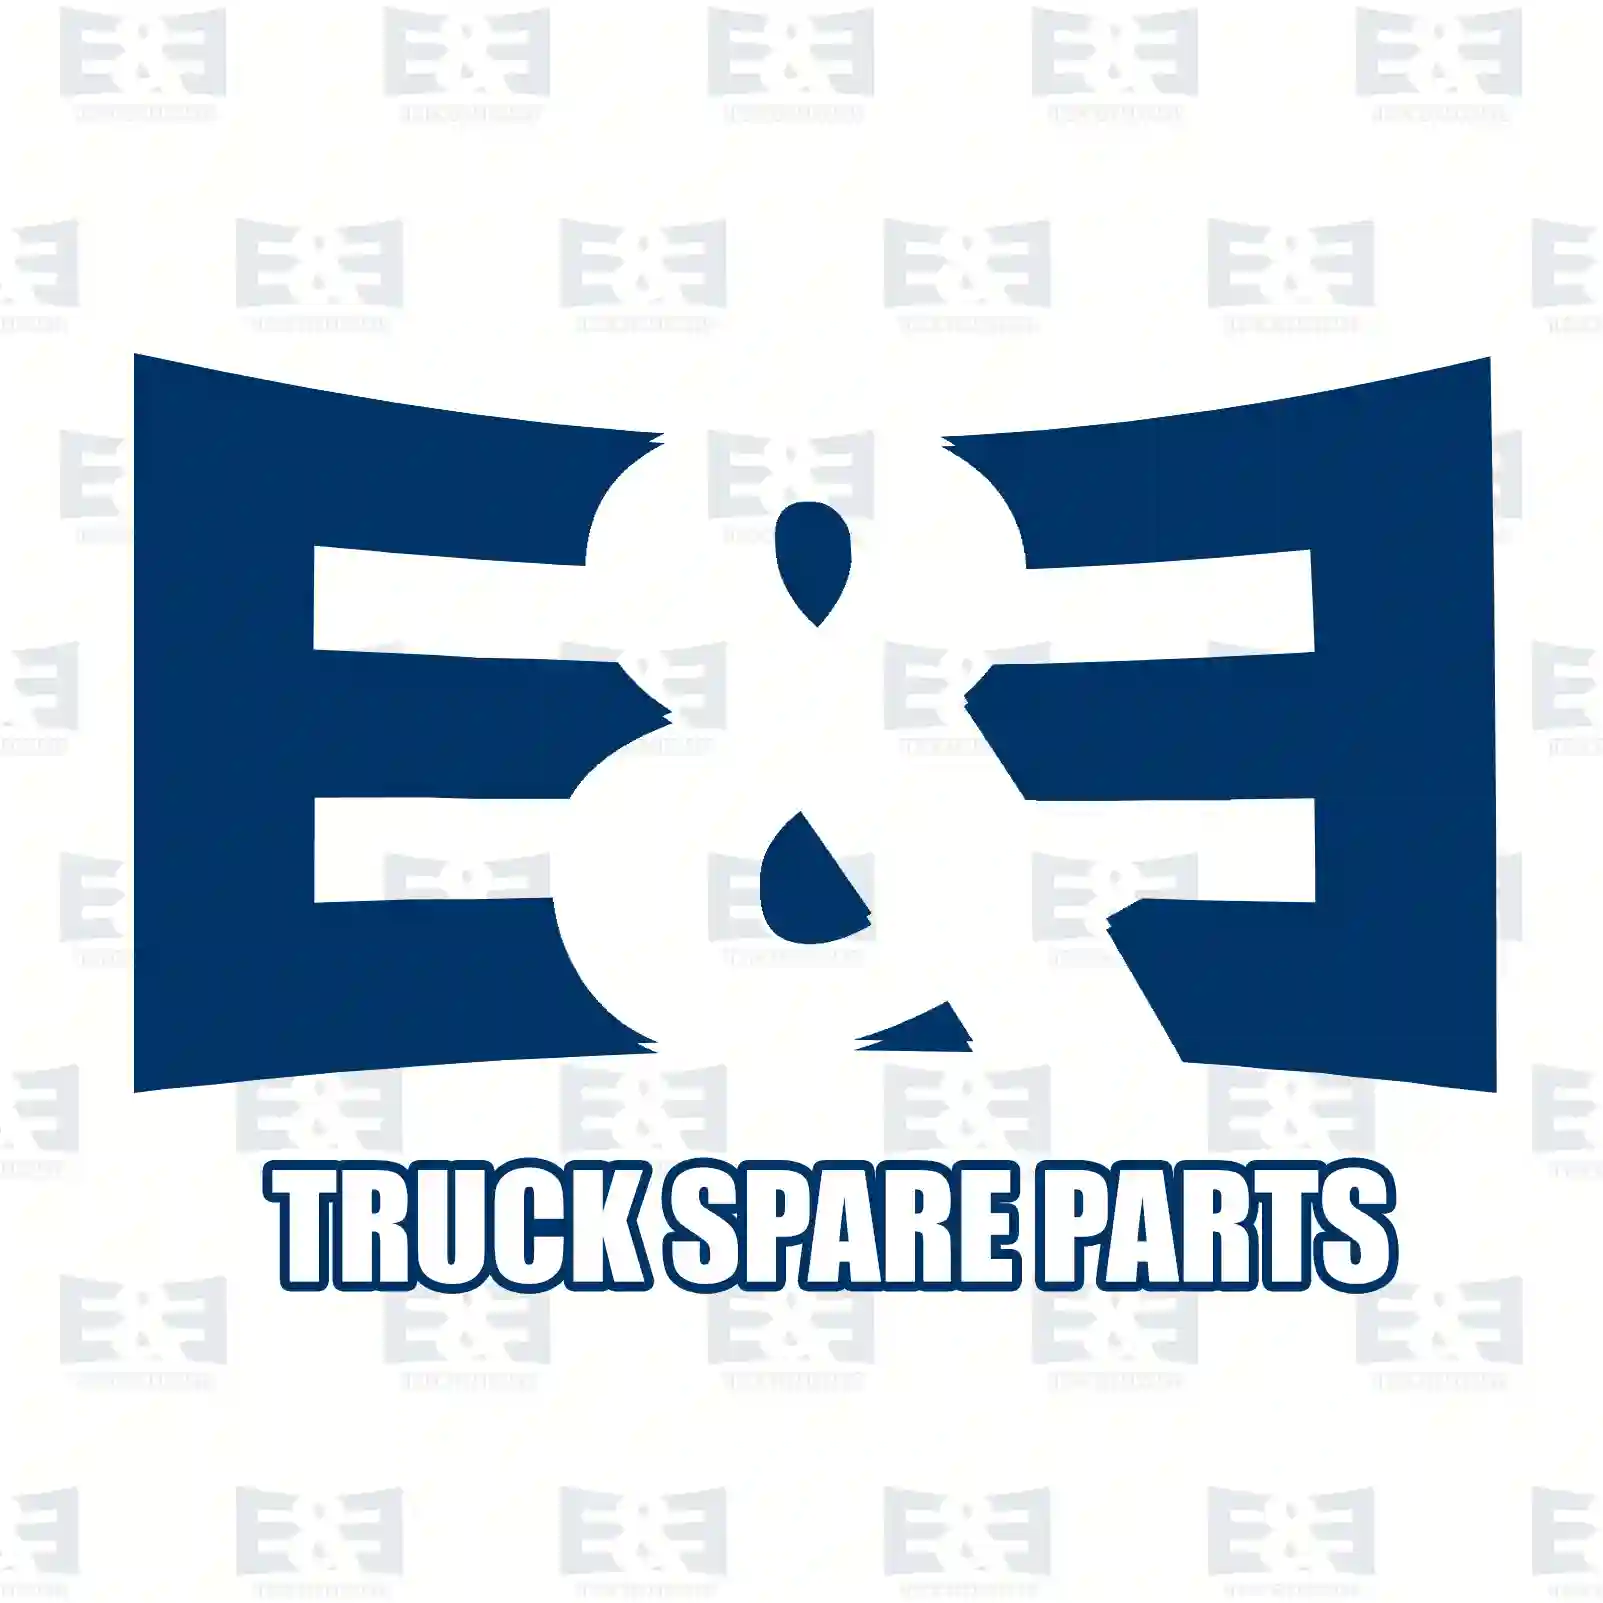 Repair kit, foot brake valve, 2E2293088, 5001863302 ||  2E2293088 E&E Truck Spare Parts | Truck Spare Parts, Auotomotive Spare Parts Repair kit, foot brake valve, 2E2293088, 5001863302 ||  2E2293088 E&E Truck Spare Parts | Truck Spare Parts, Auotomotive Spare Parts